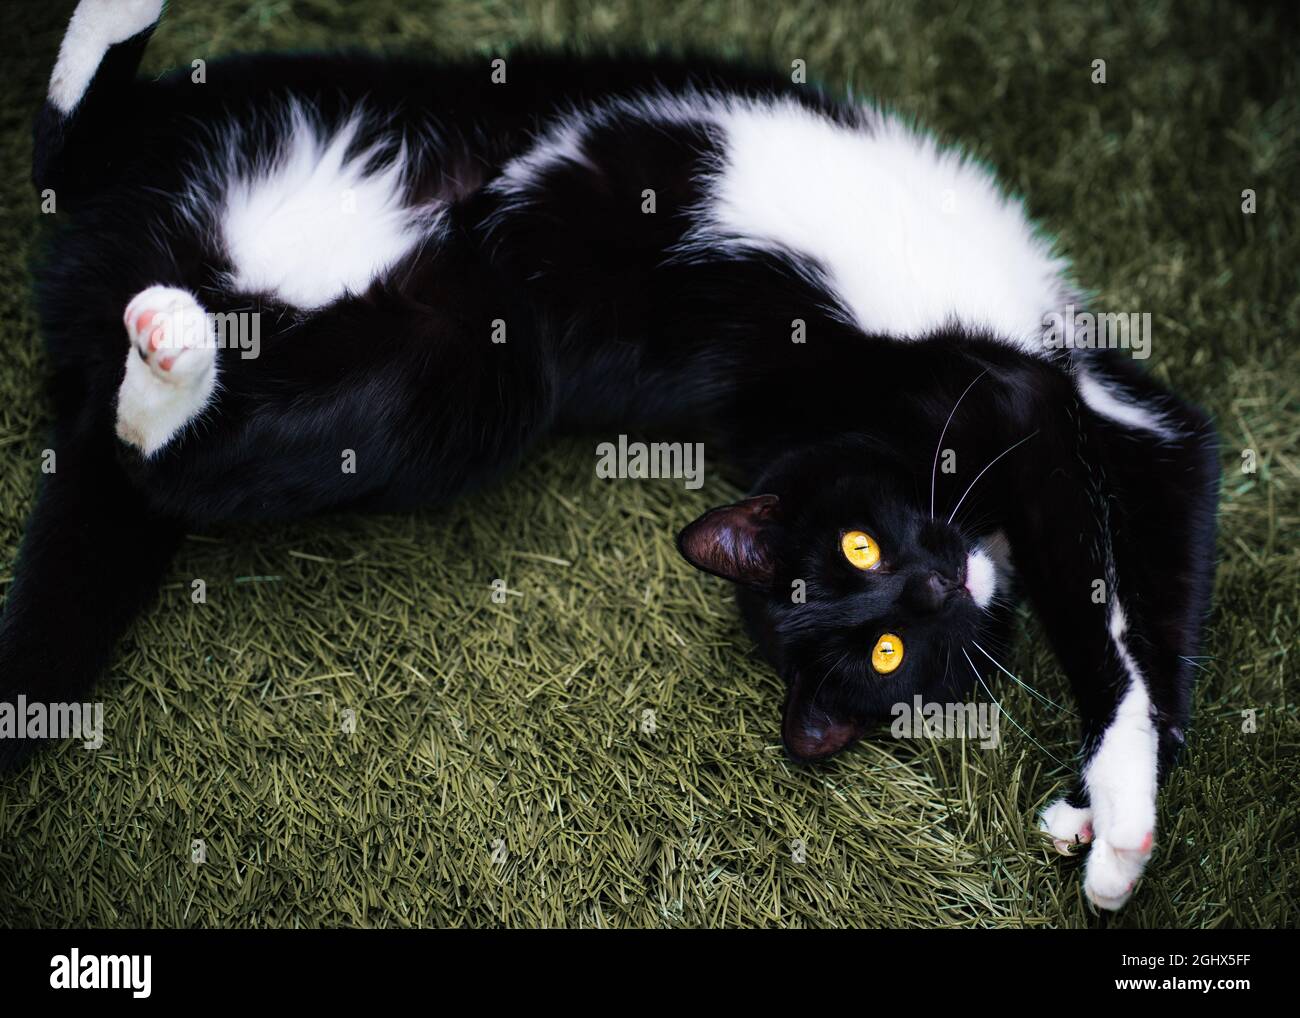 Vue en hauteur d'un chat de tuxedo noir et blanc allongé sur l'herbe dans un jardin Banque D'Images